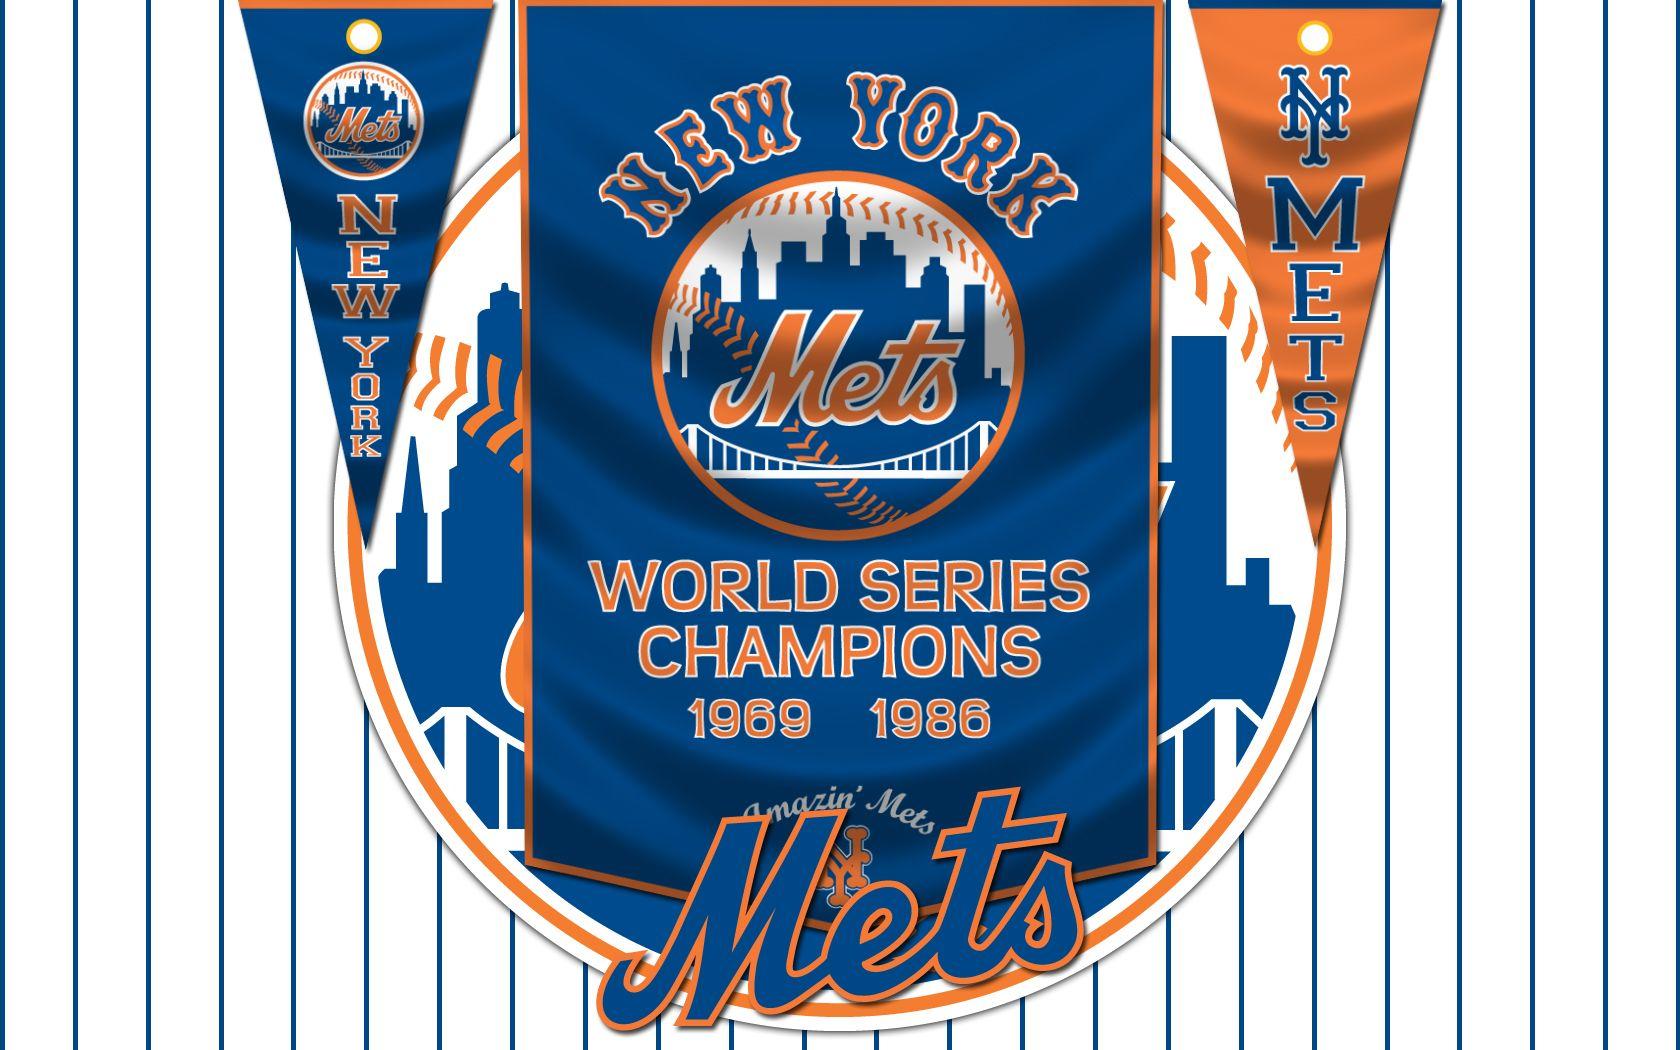 Windows Baseball Themes New York Mets. Wallpaper For Desktop